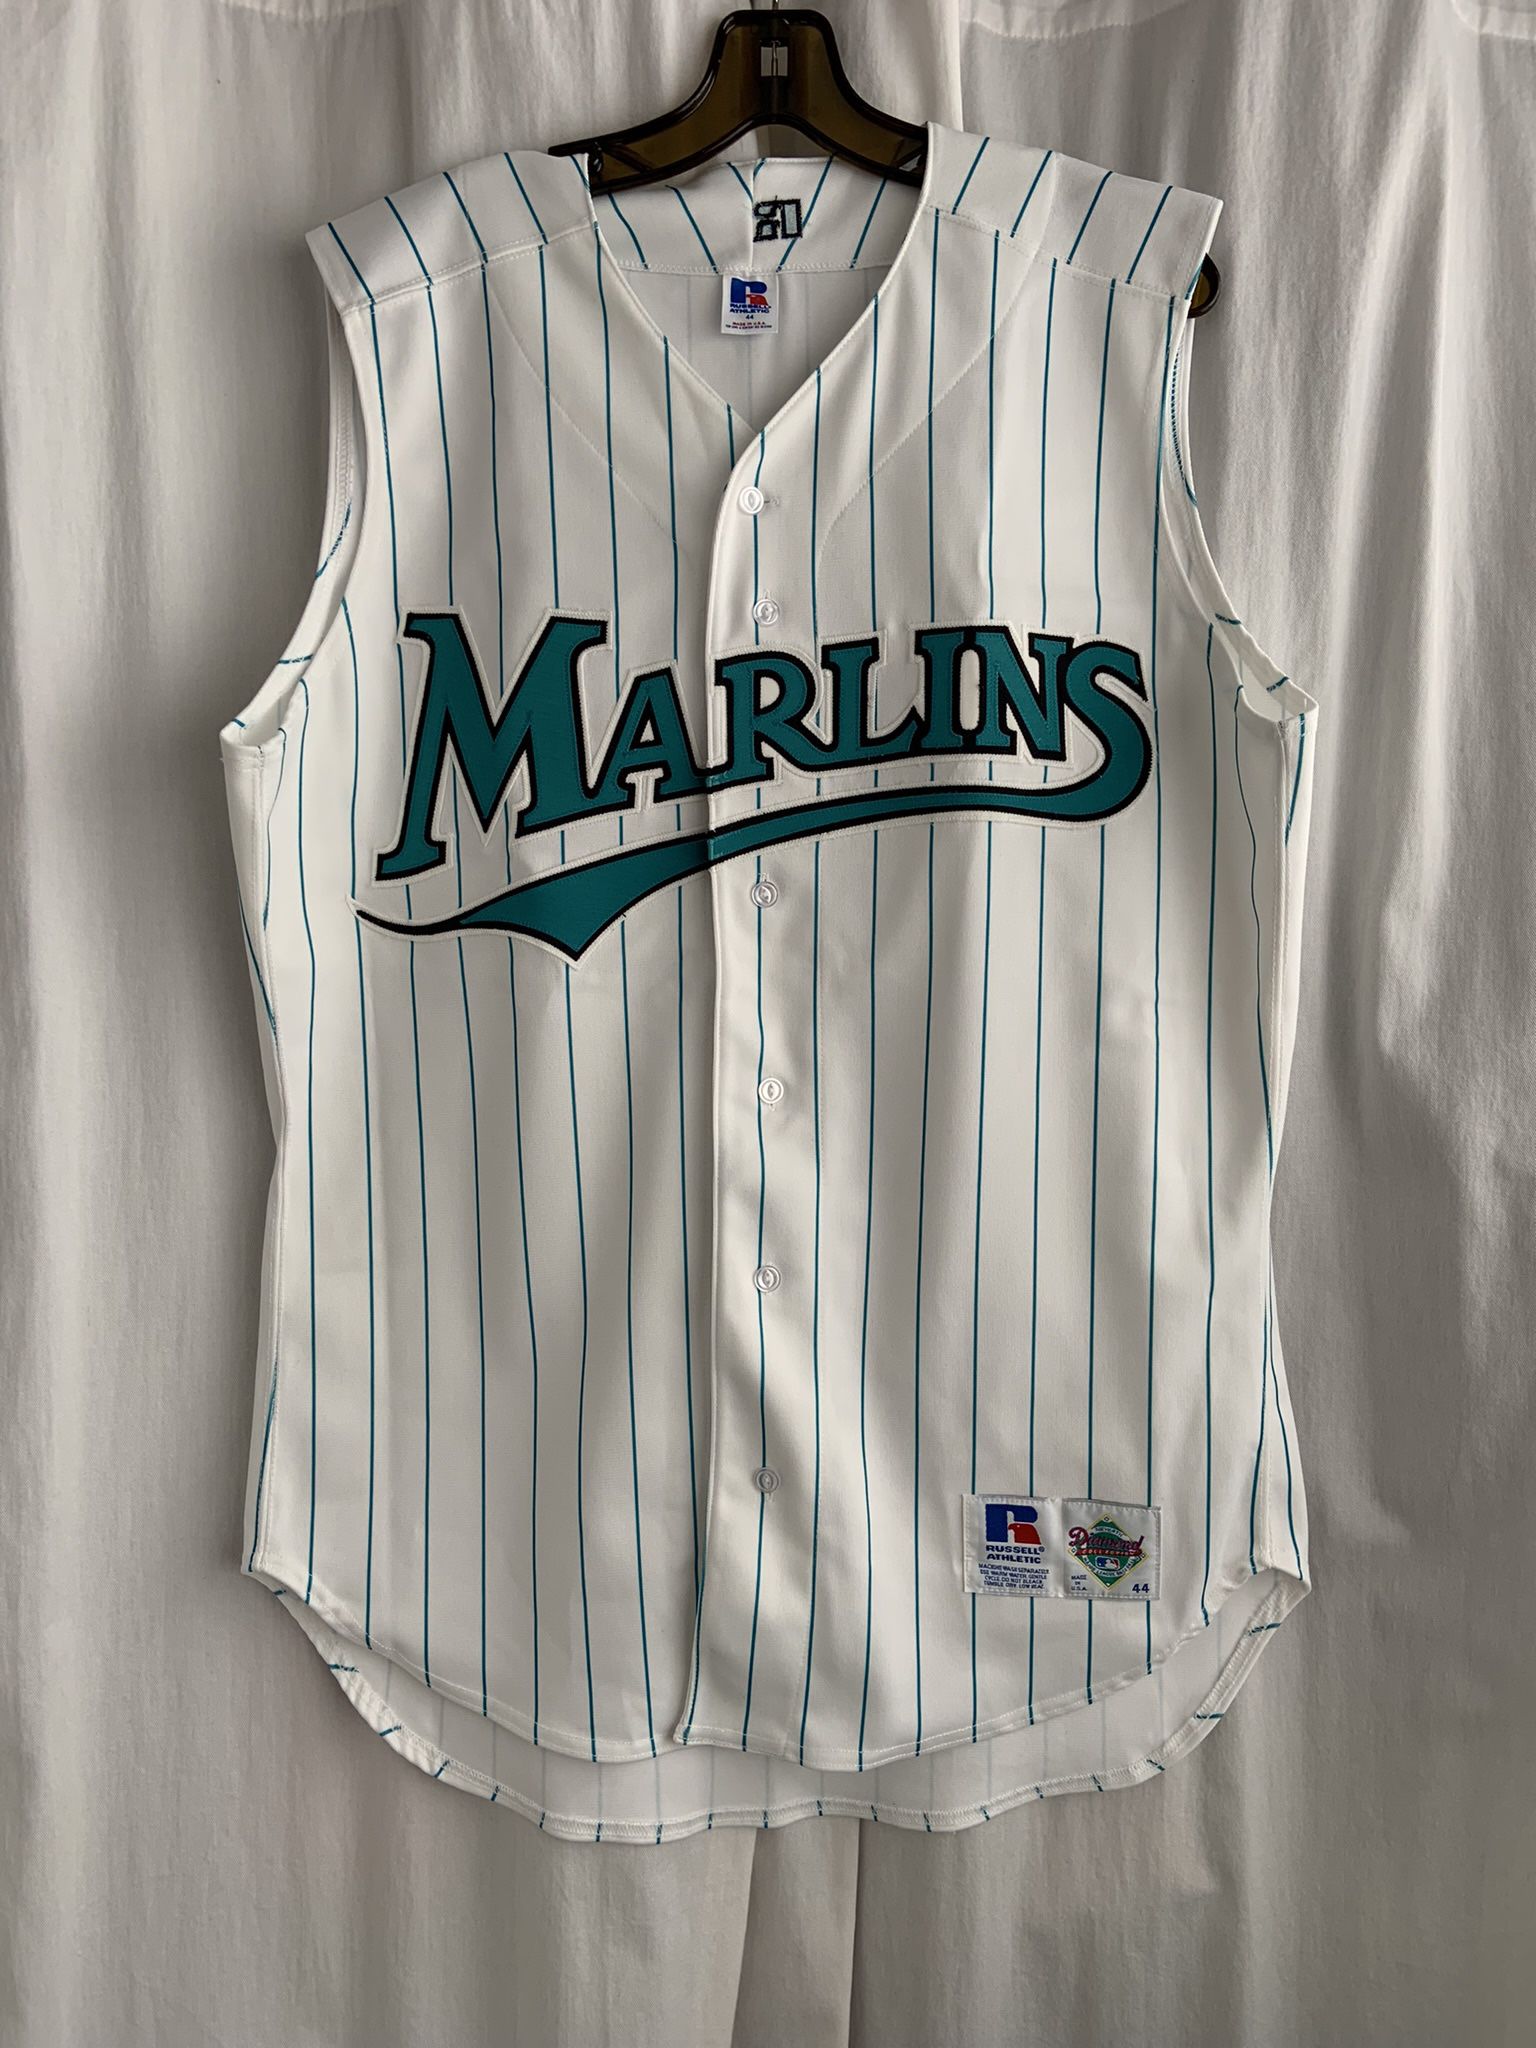 old marlins jerseys